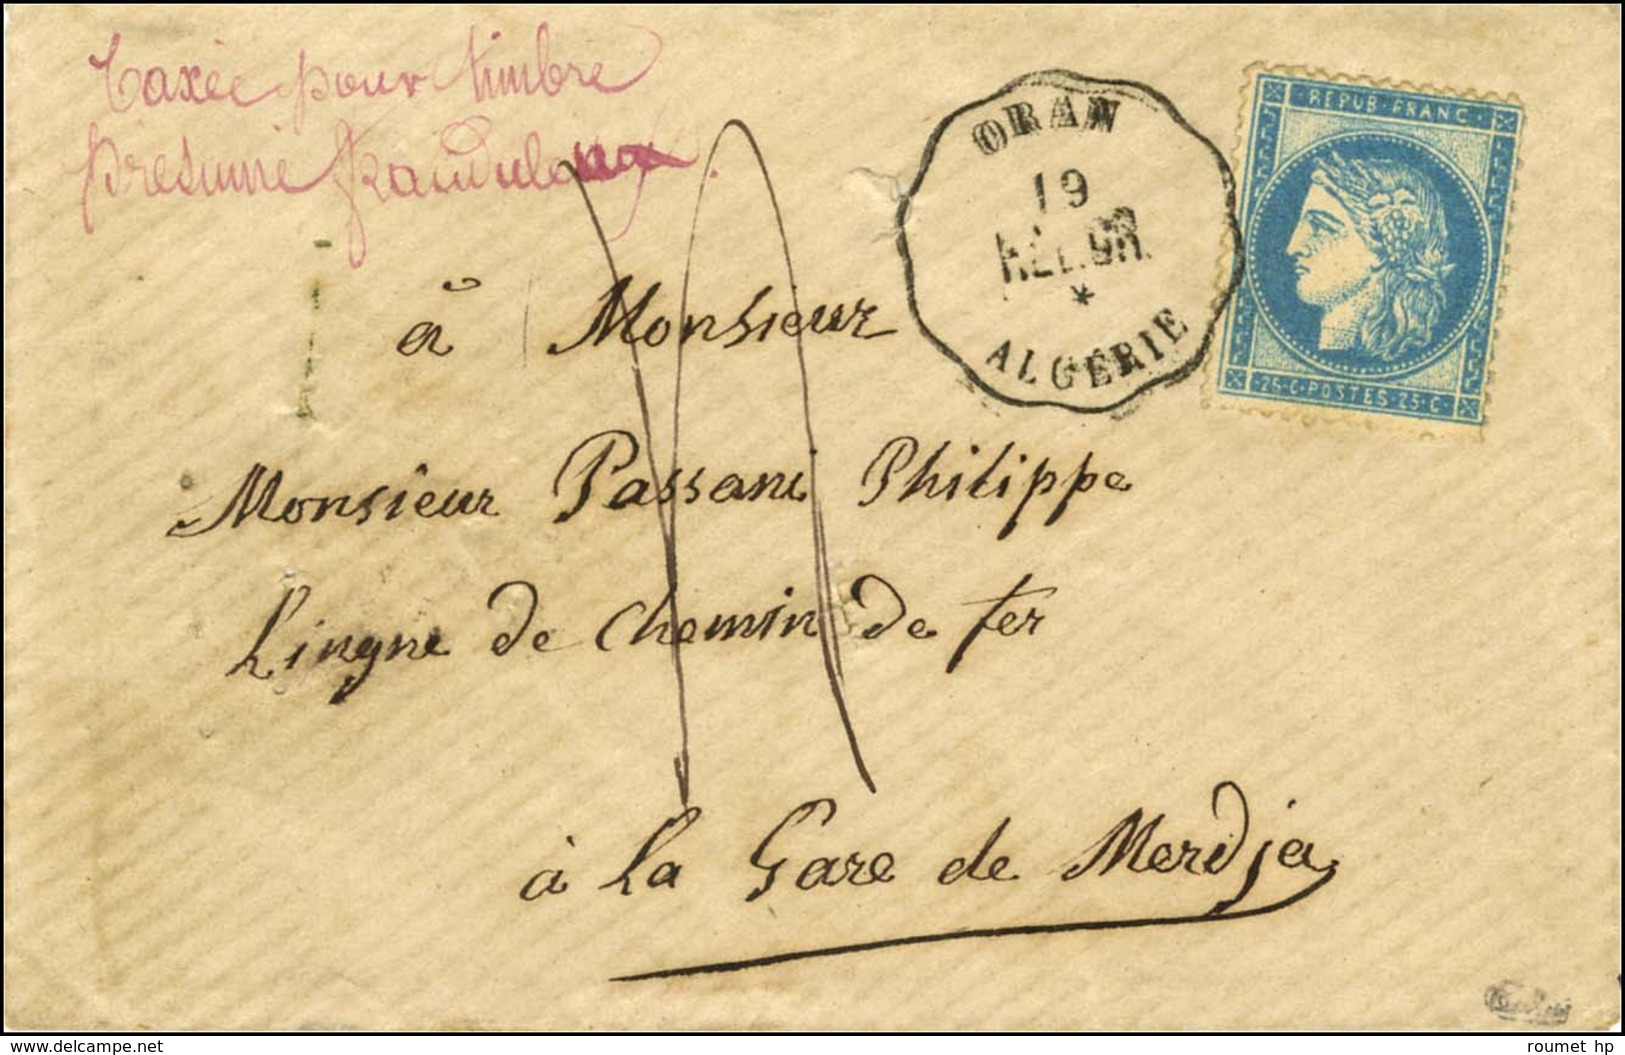 Conv Stat ORAN / ALG.OR / ALGERIE / 25c Faux D'Oran Sur Lettre Taxée 4 Pour Timbre Frauduleux Adressée à La Gare De Merd - 1871-1875 Cérès